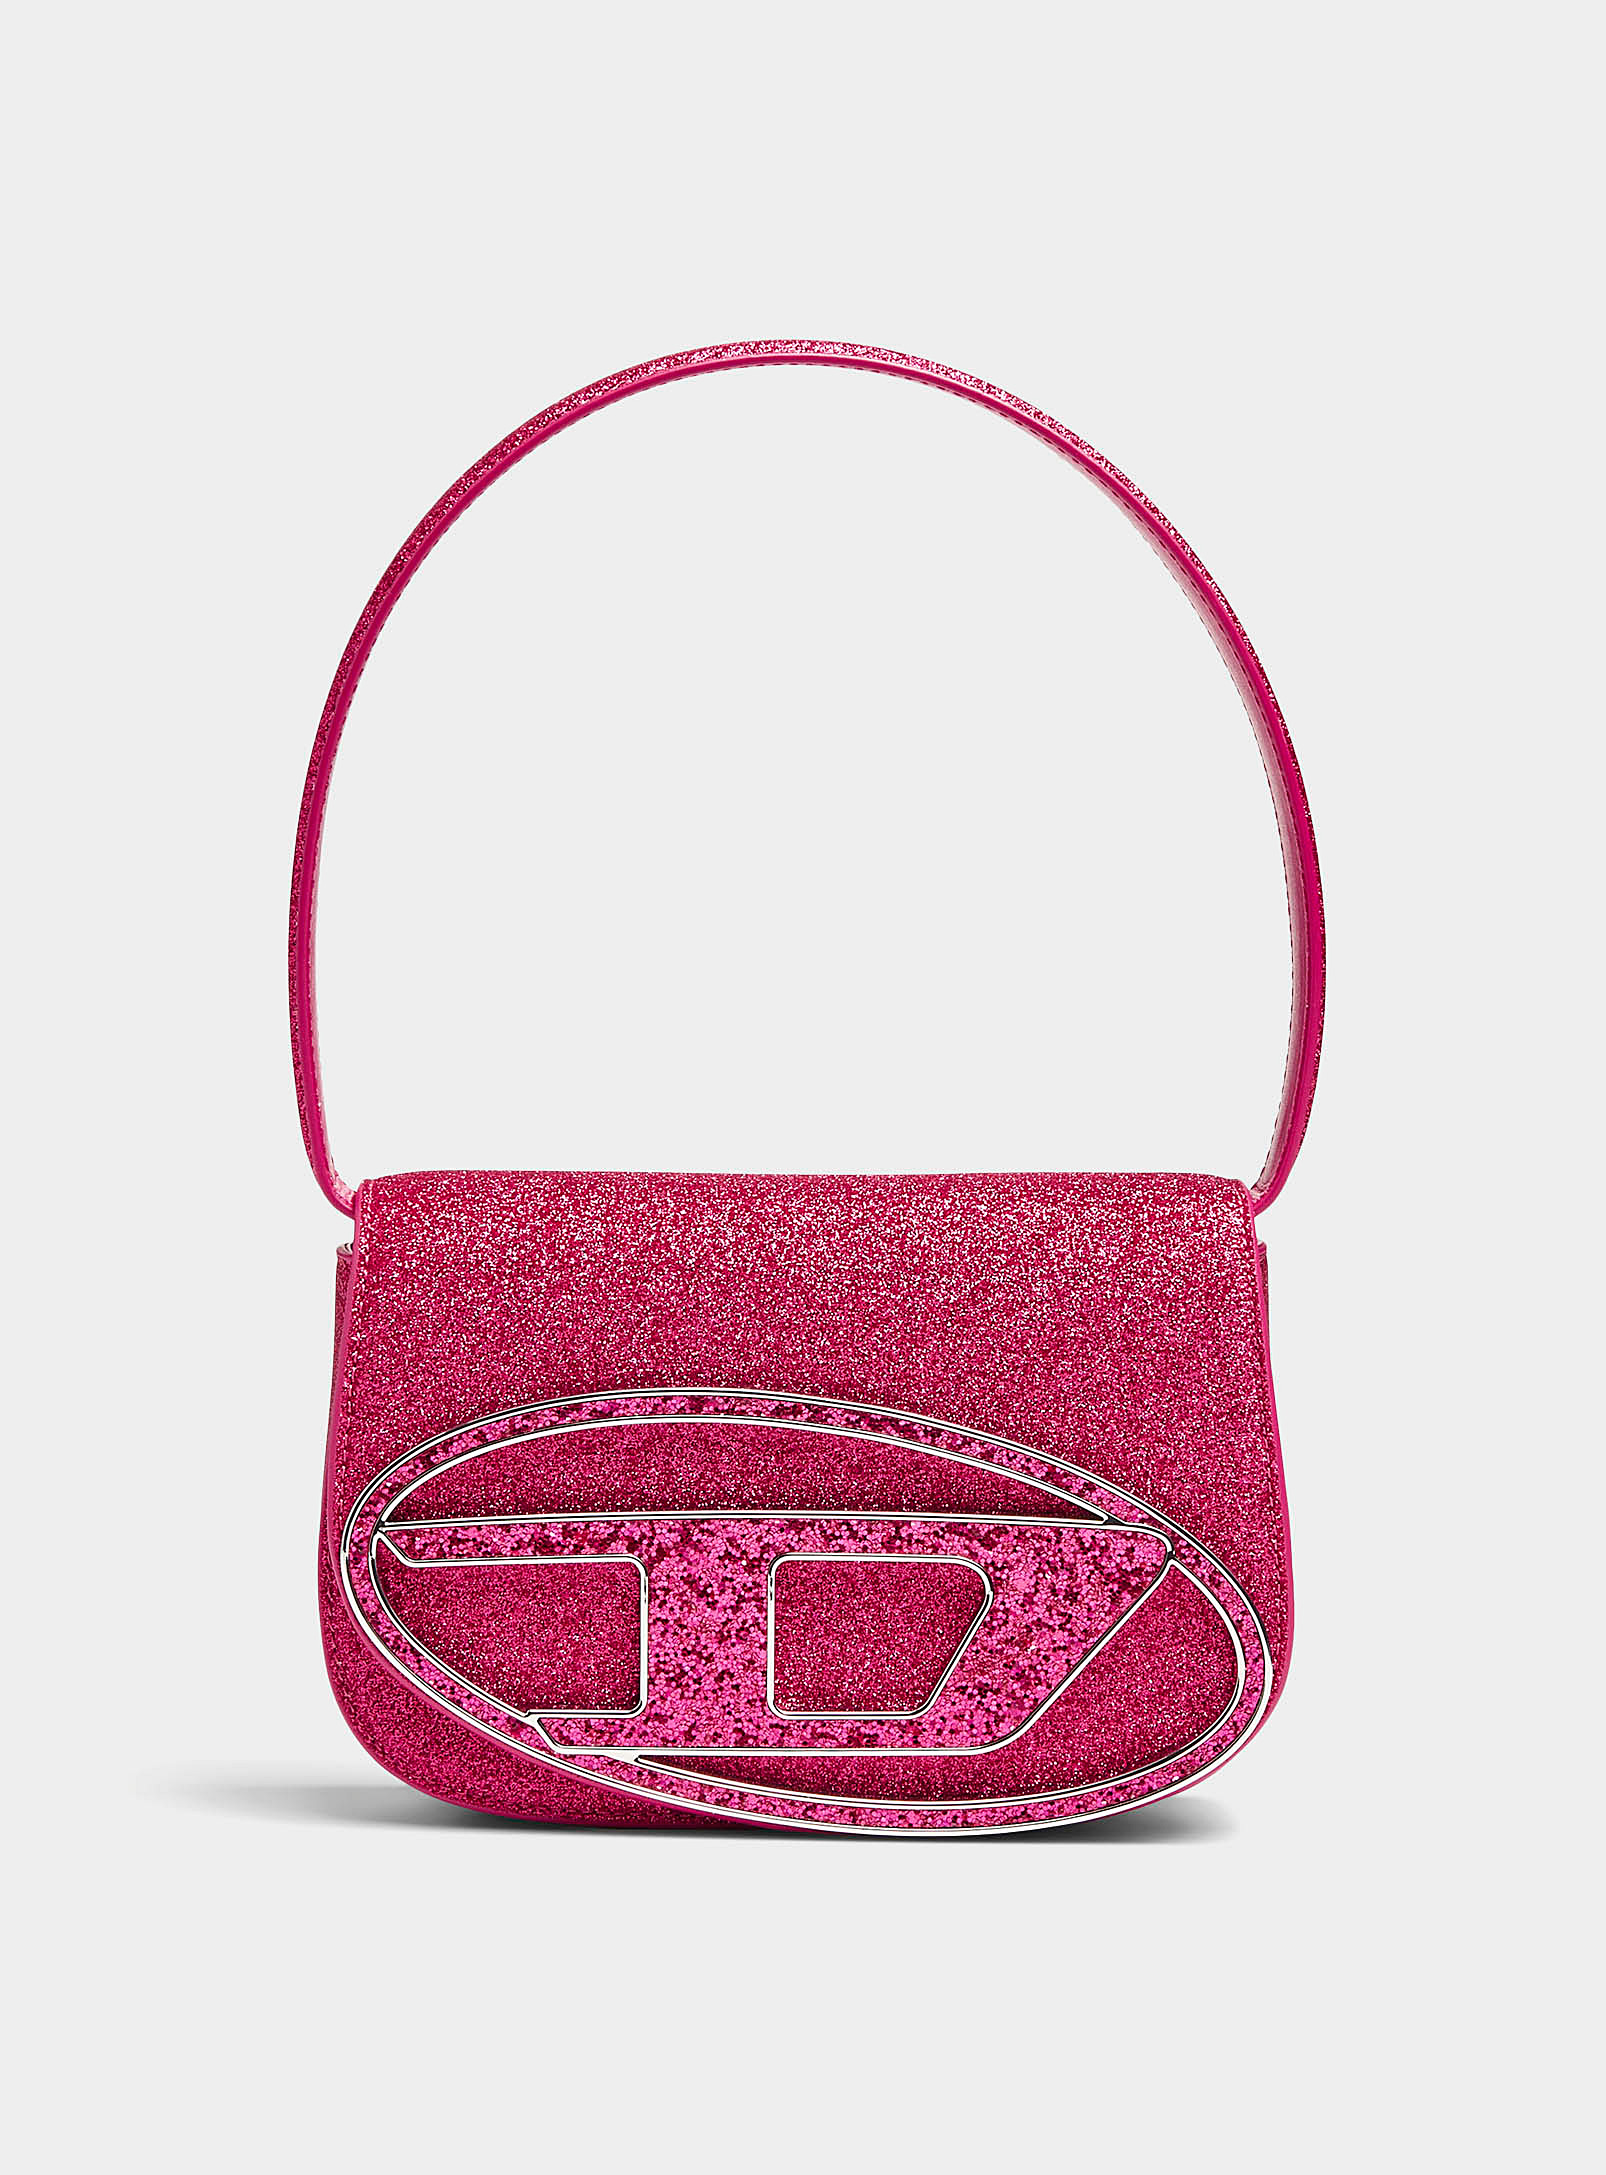 Diesel Sequins Handbag In Pink